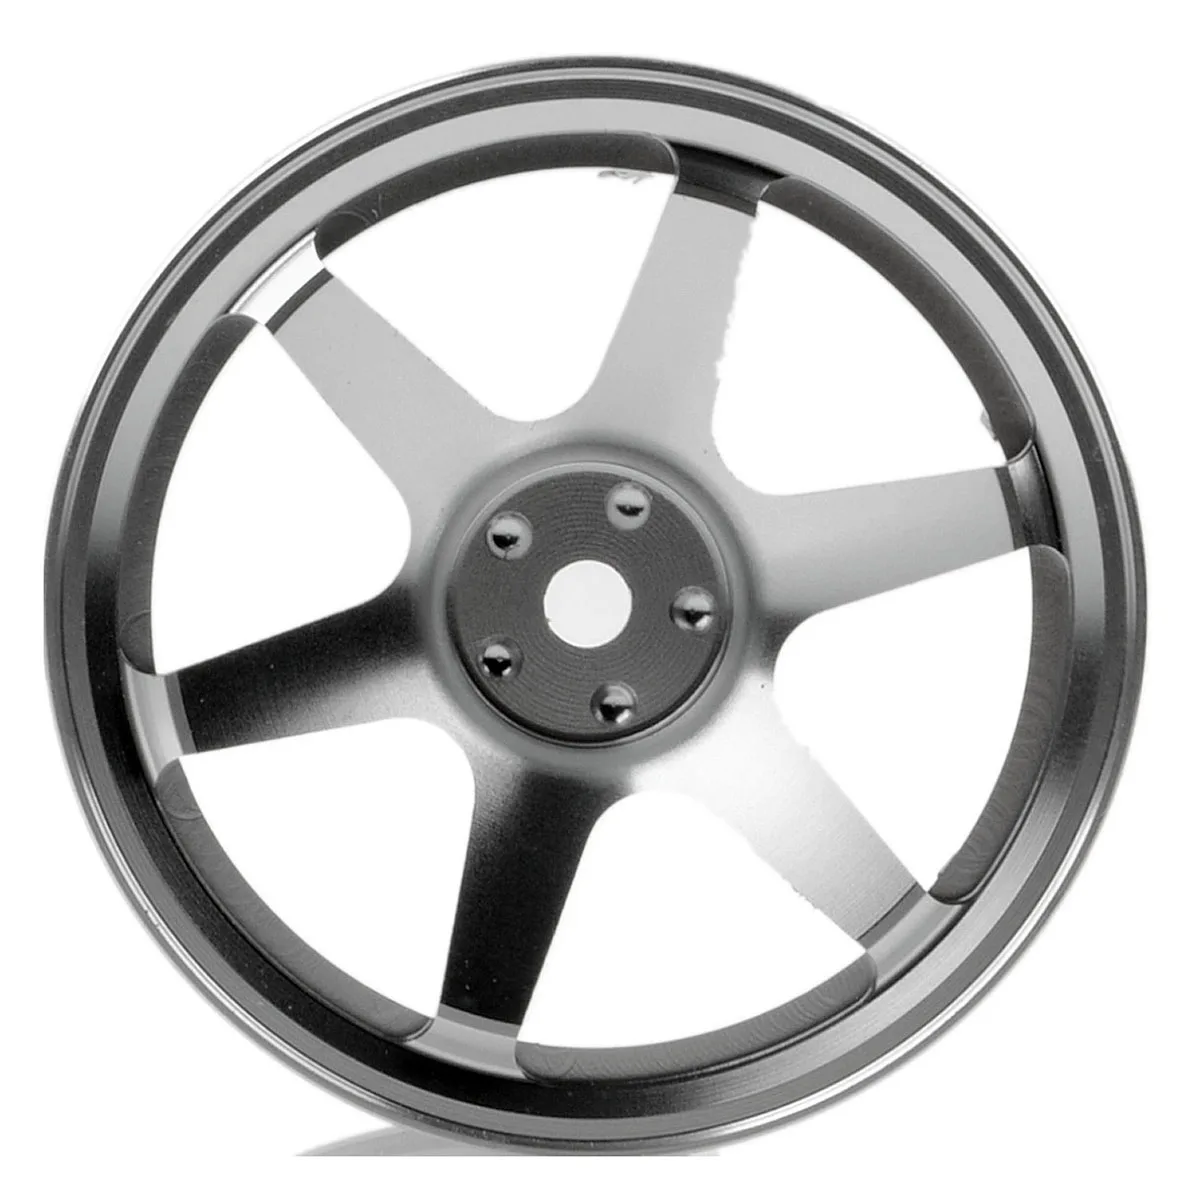 

4P Aluminum Alloy6 Spoke Wheel Rim for RC 1/10 On-Road 1052 Drift Sakura TE37+,Silver